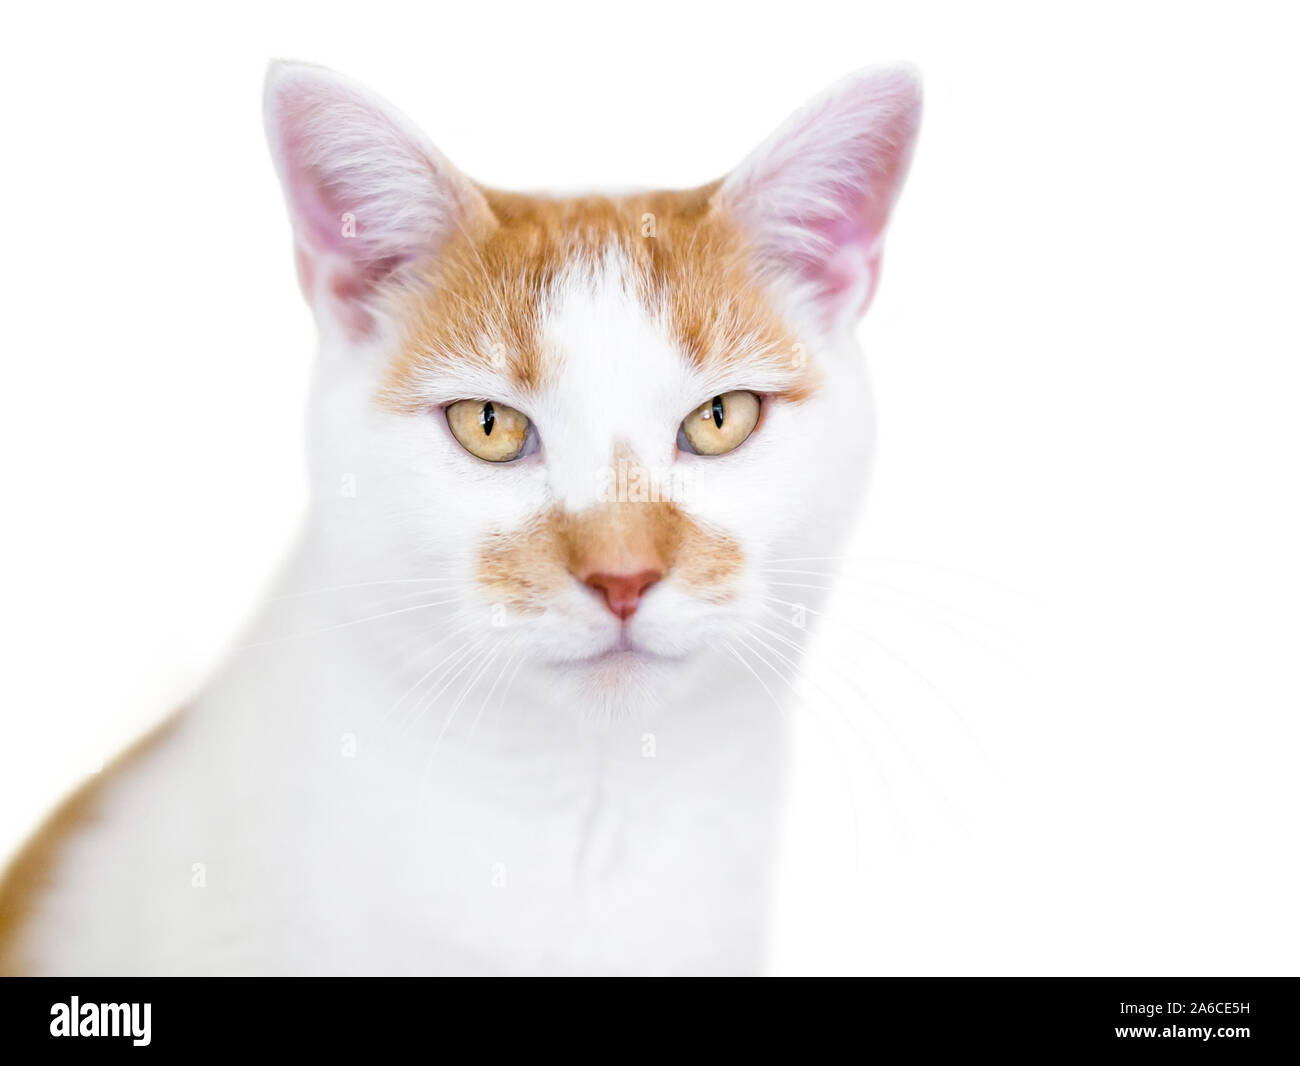 Une orange et blanc shorthair domestique chat avec des yeux jaune d'or Banque D'Images